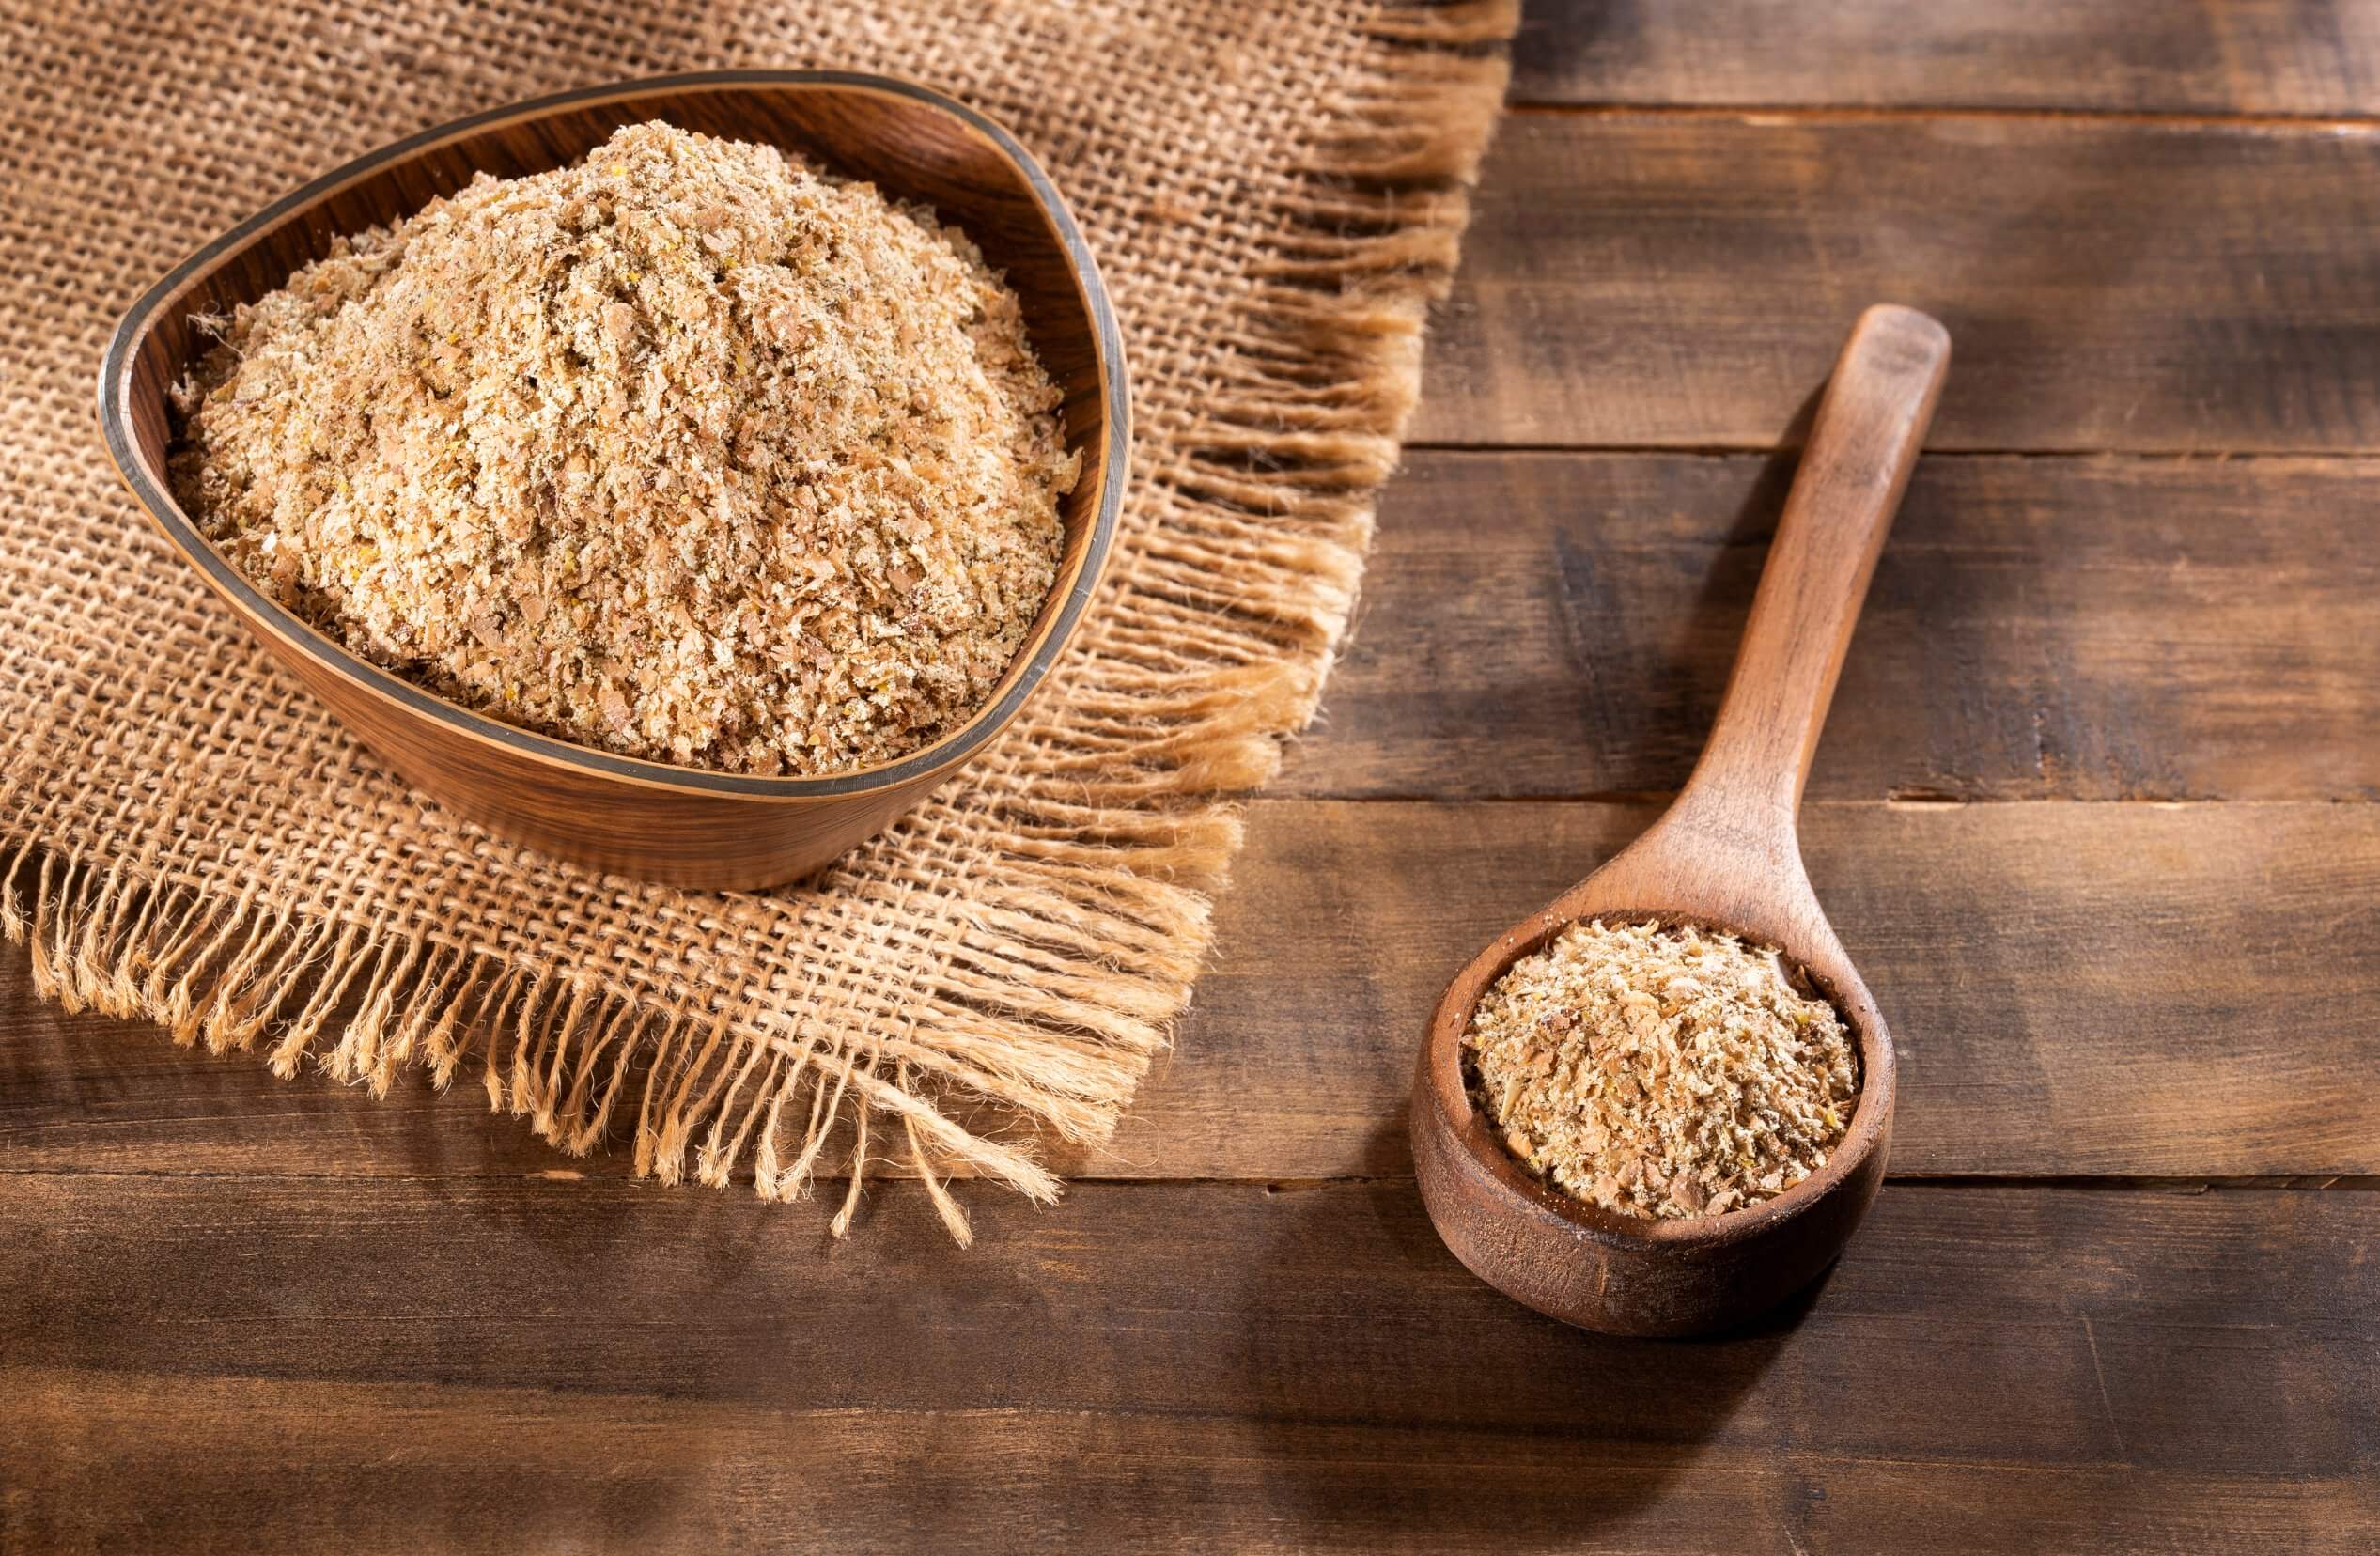 Cómo consumir salvado de trigo: consejos y beneficios - Mejor con